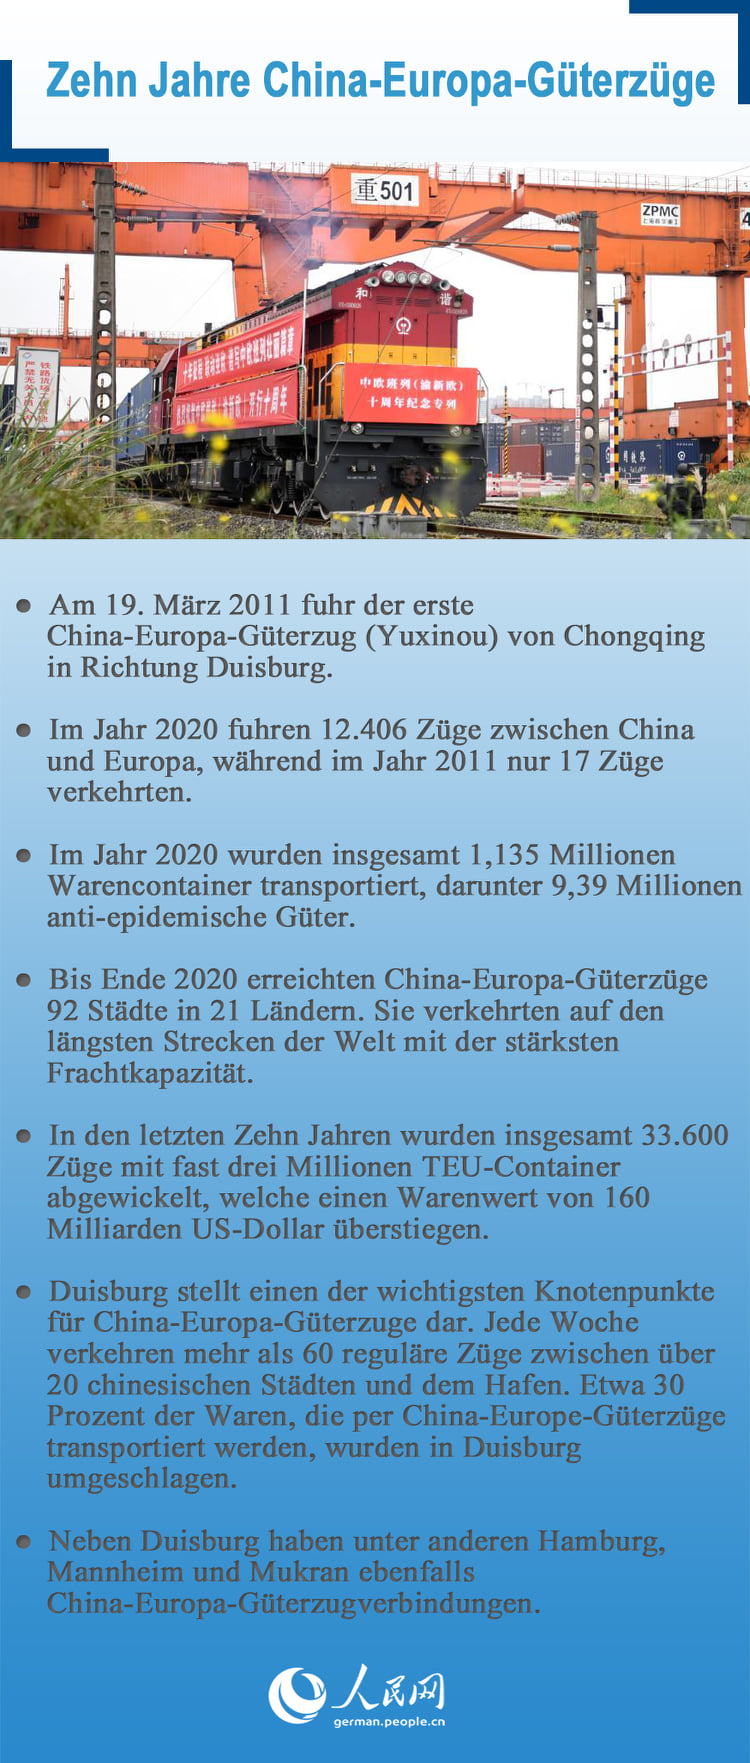 Zehn Jahre China-Europa-Güterzüge